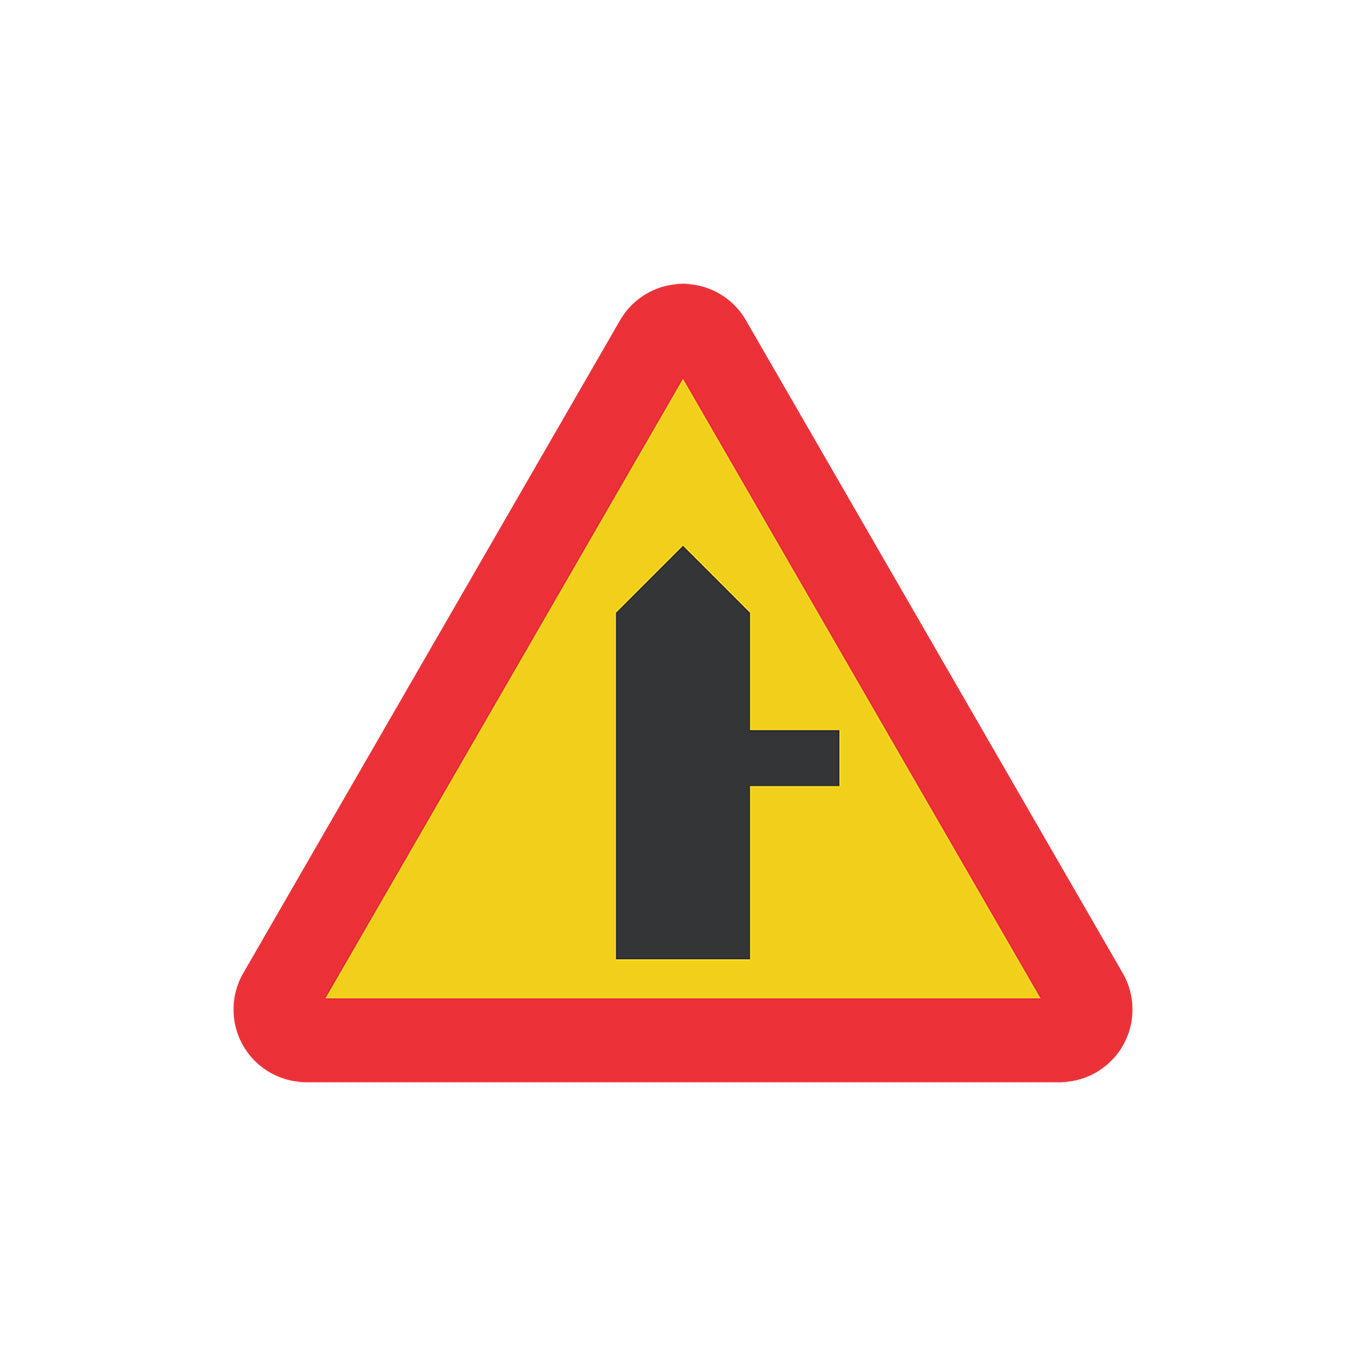 A29 Varning för vägkorsning där anslutande väg har väjningsplikt